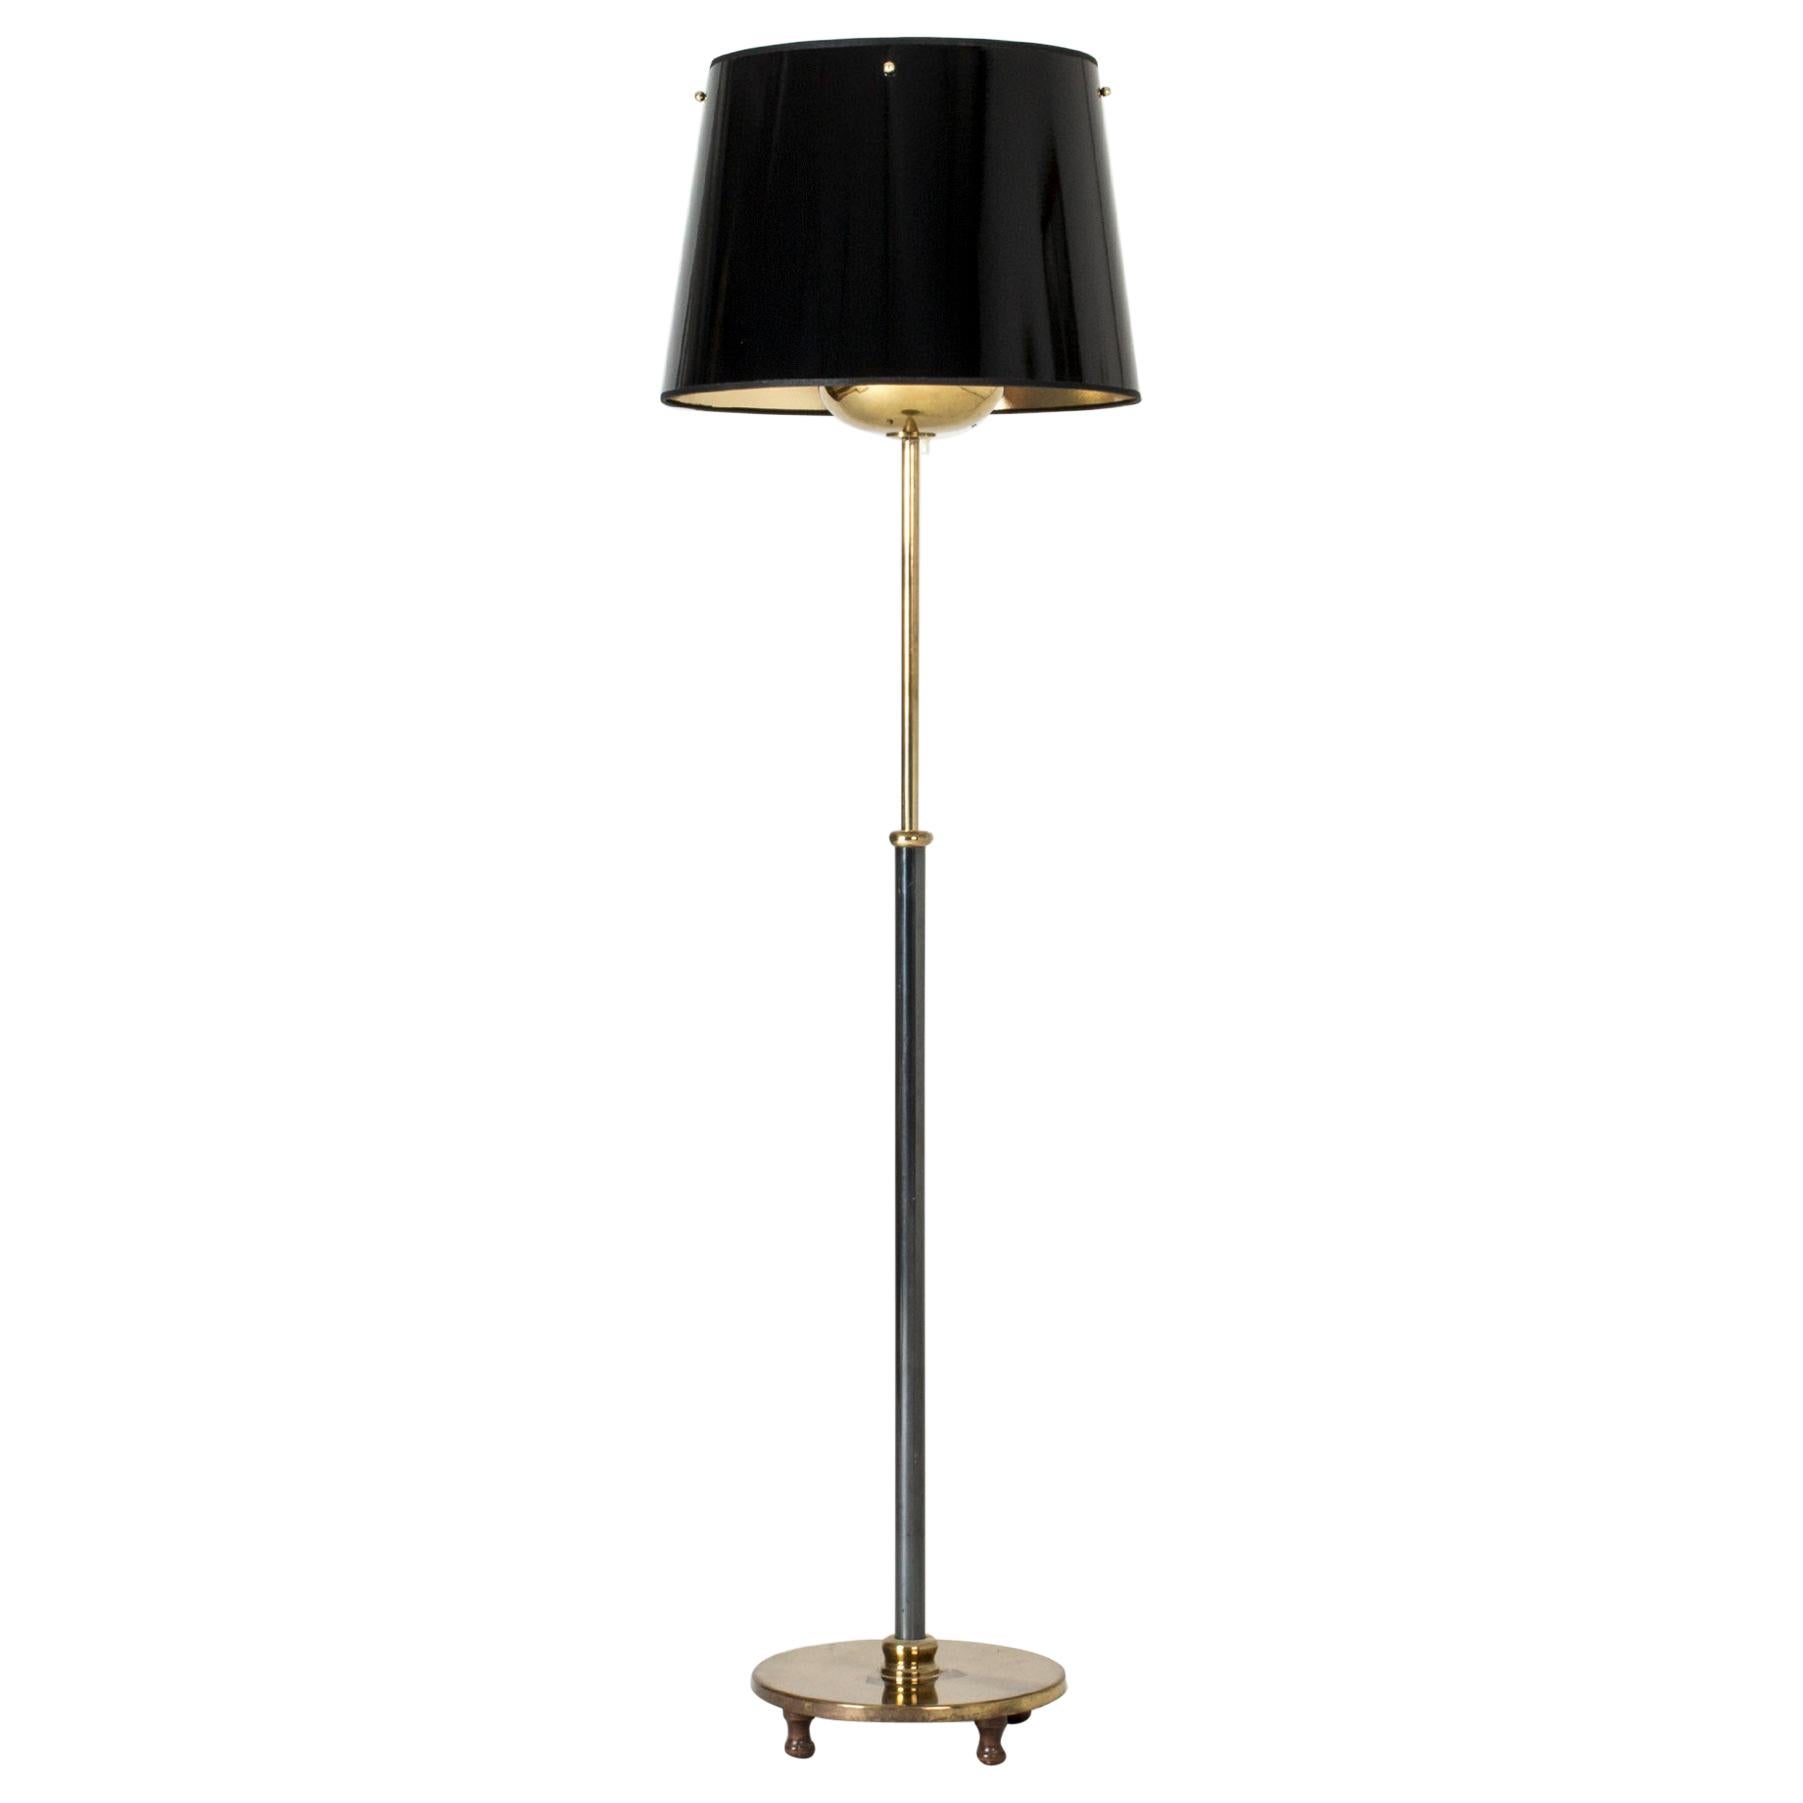 Brass Floor Lamp by Josef Frank